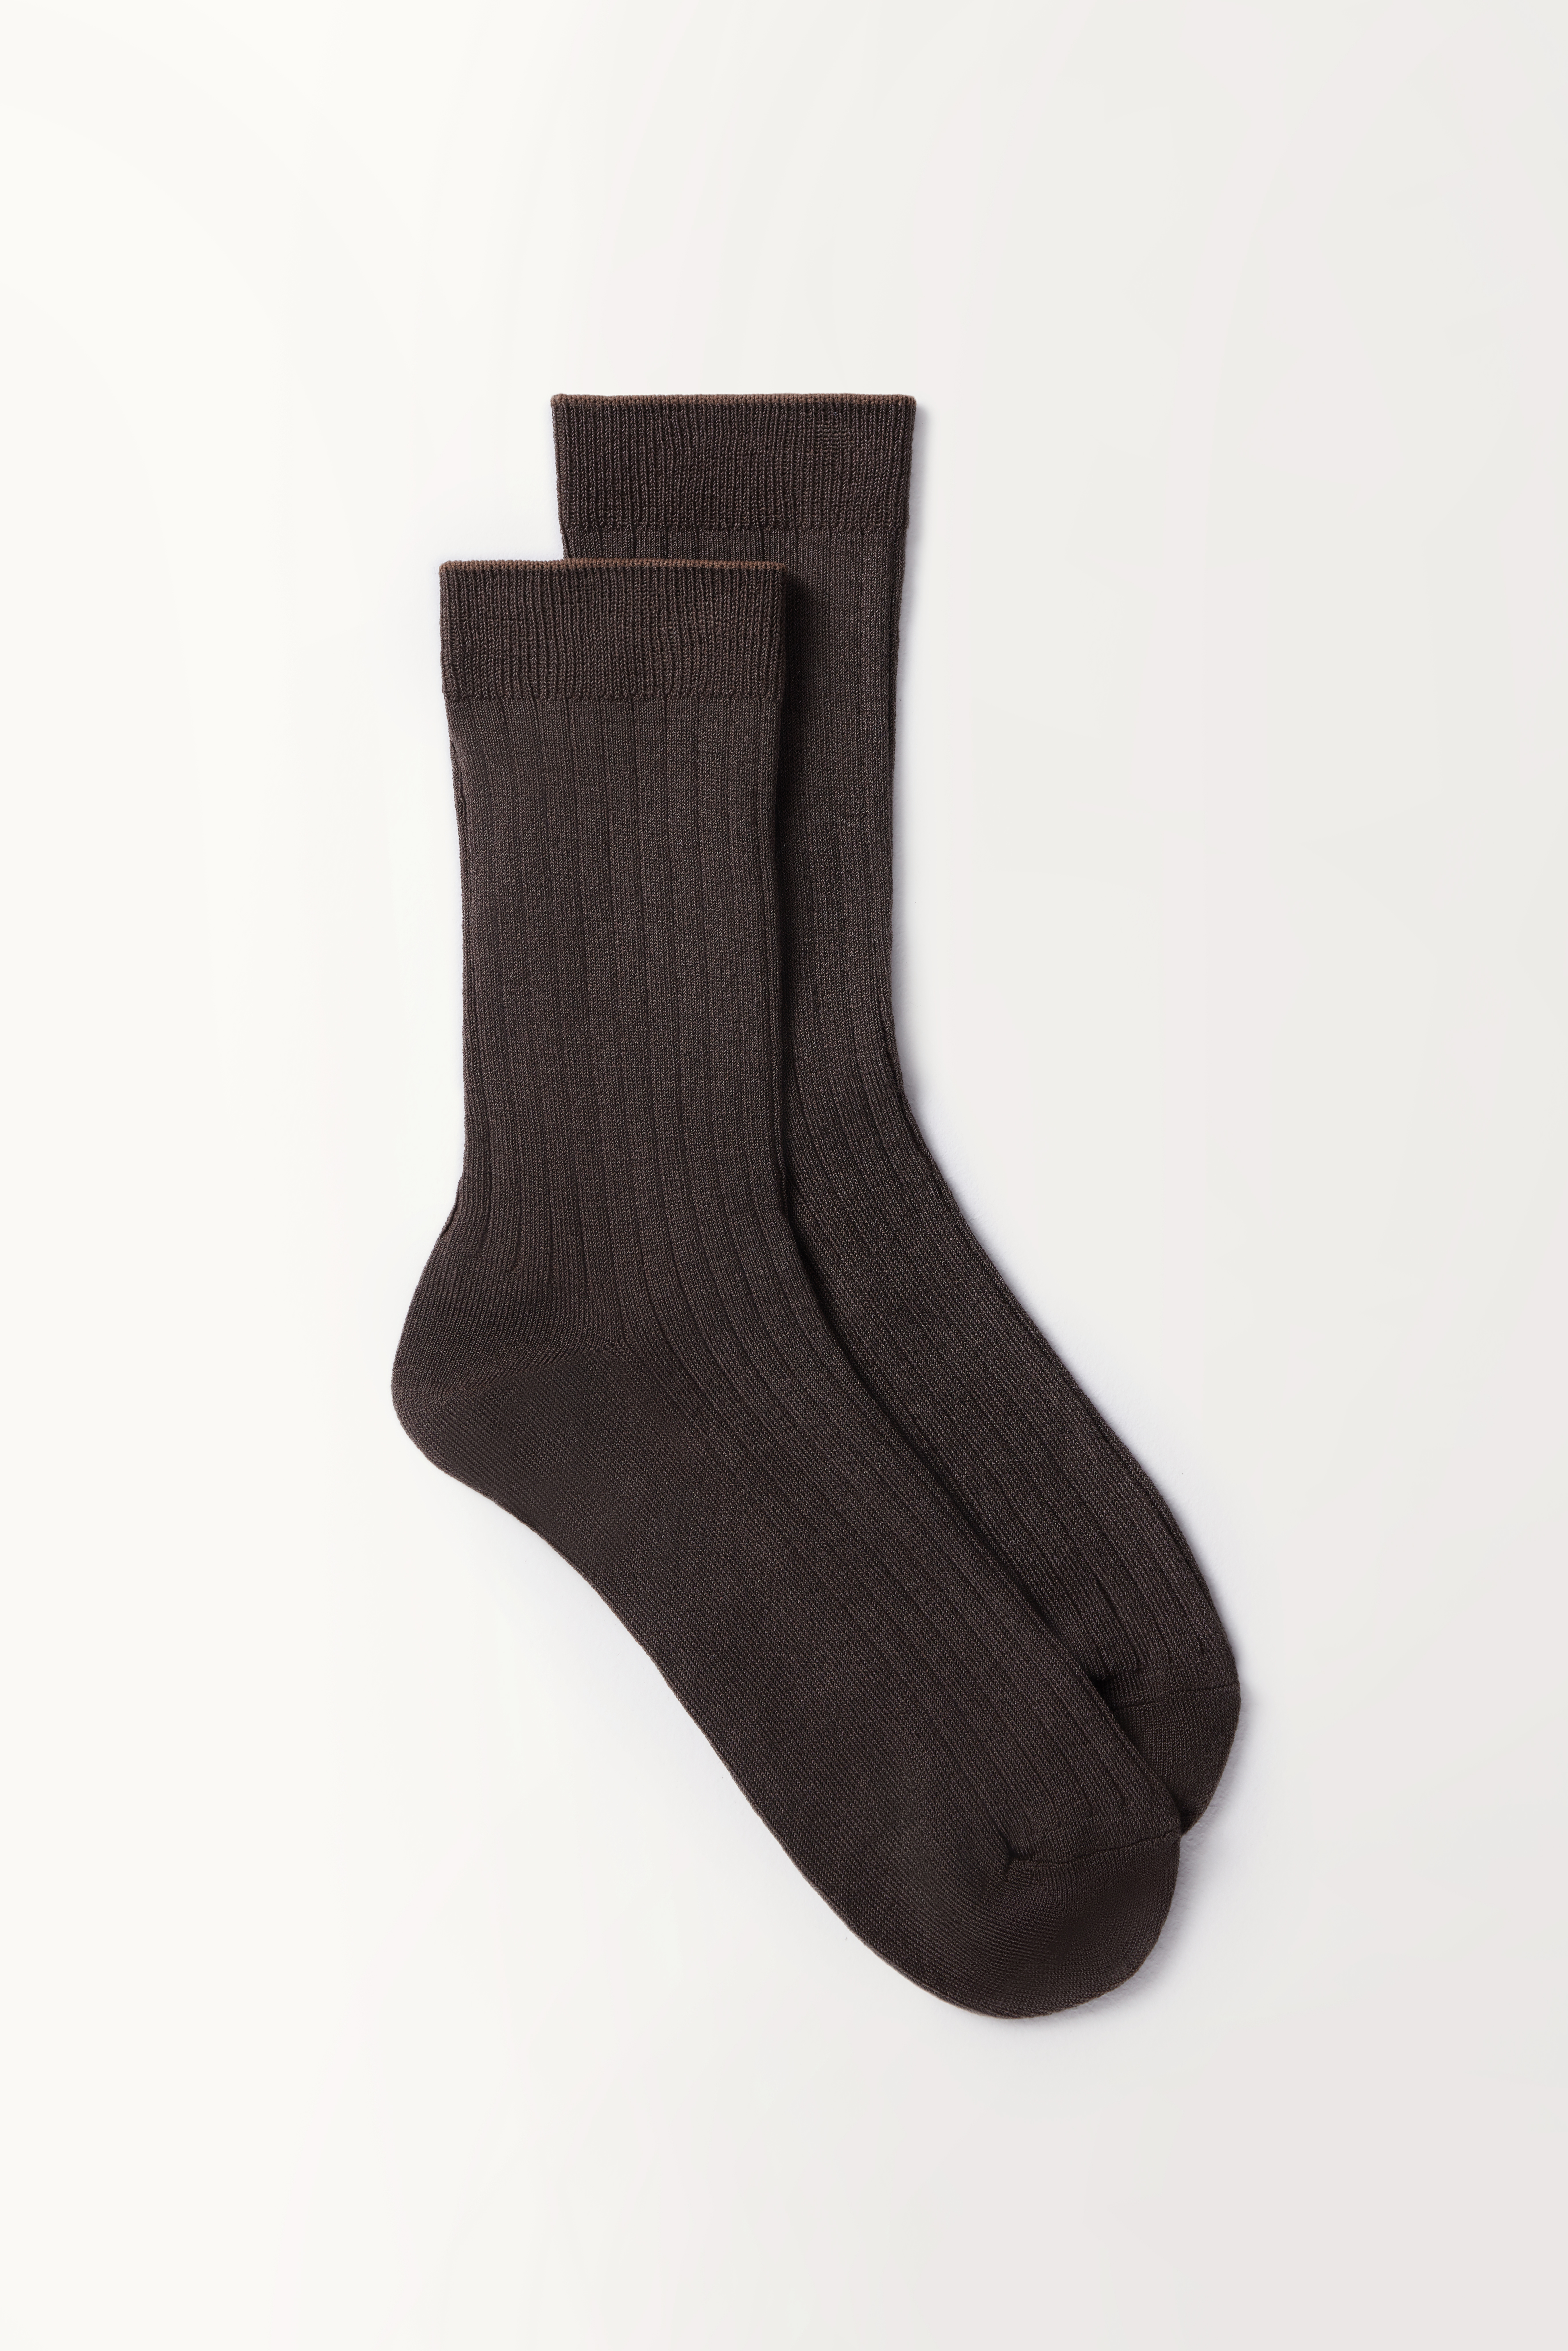 Хлопковые носки классической длины (горький шоколад)